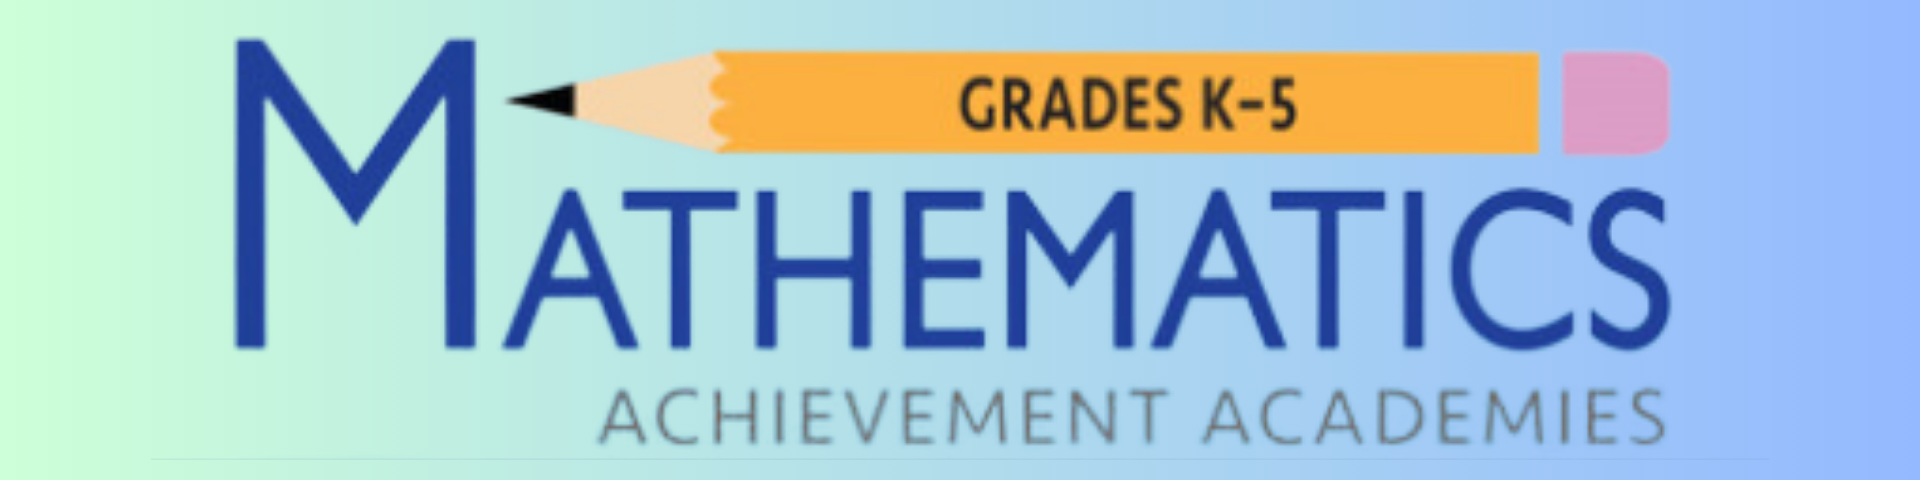 Mathematics Grades K-5 Achievement Academies